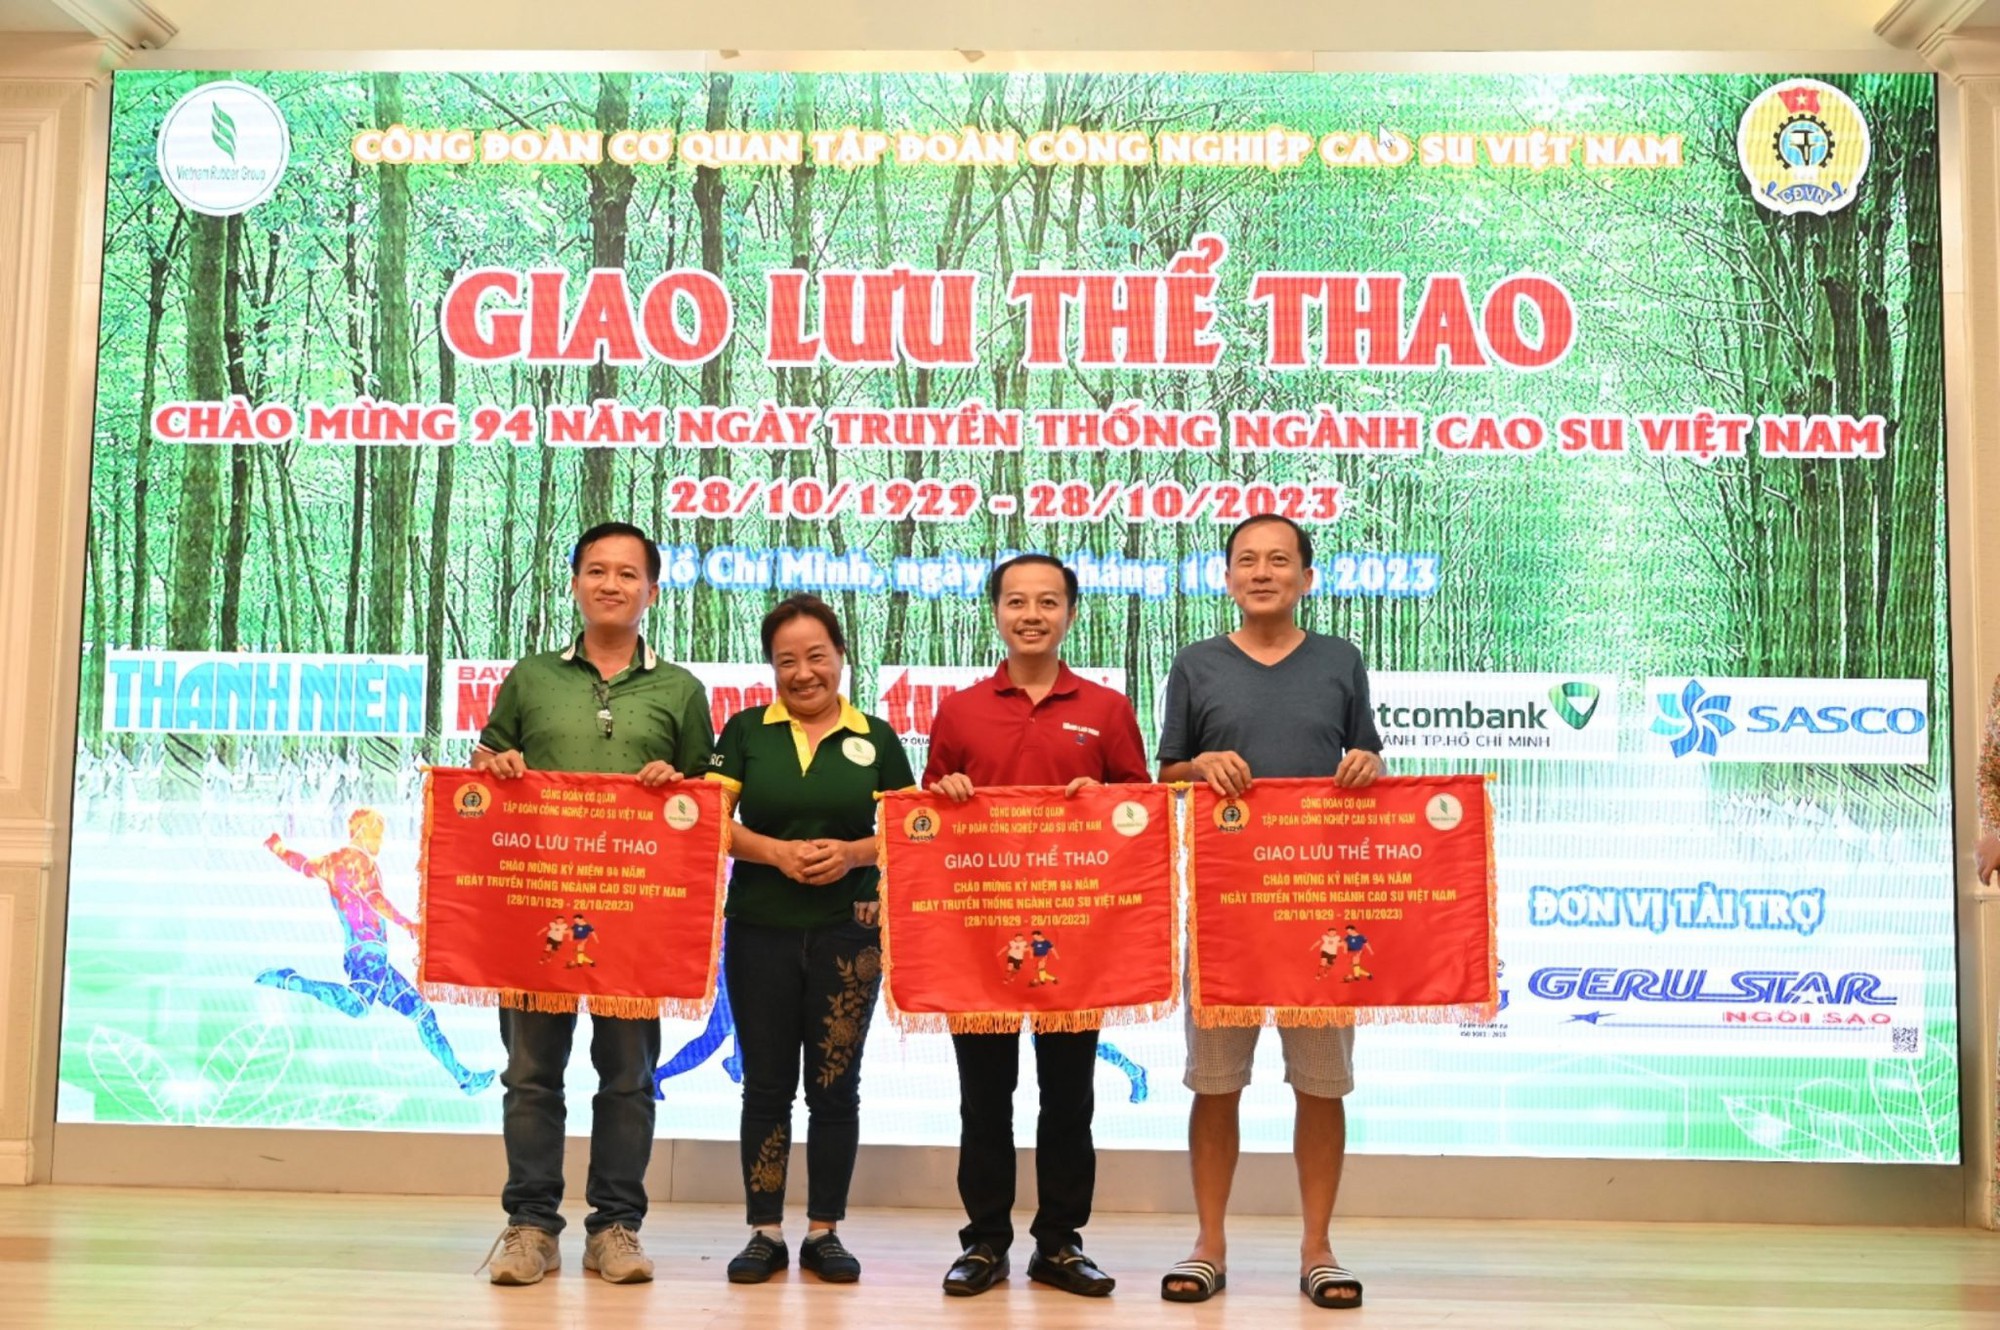 Tưng bừng hội thao mừng kỷ niệm 94 năm truyền thống ngành cao su Việt Nam - Ảnh 12.